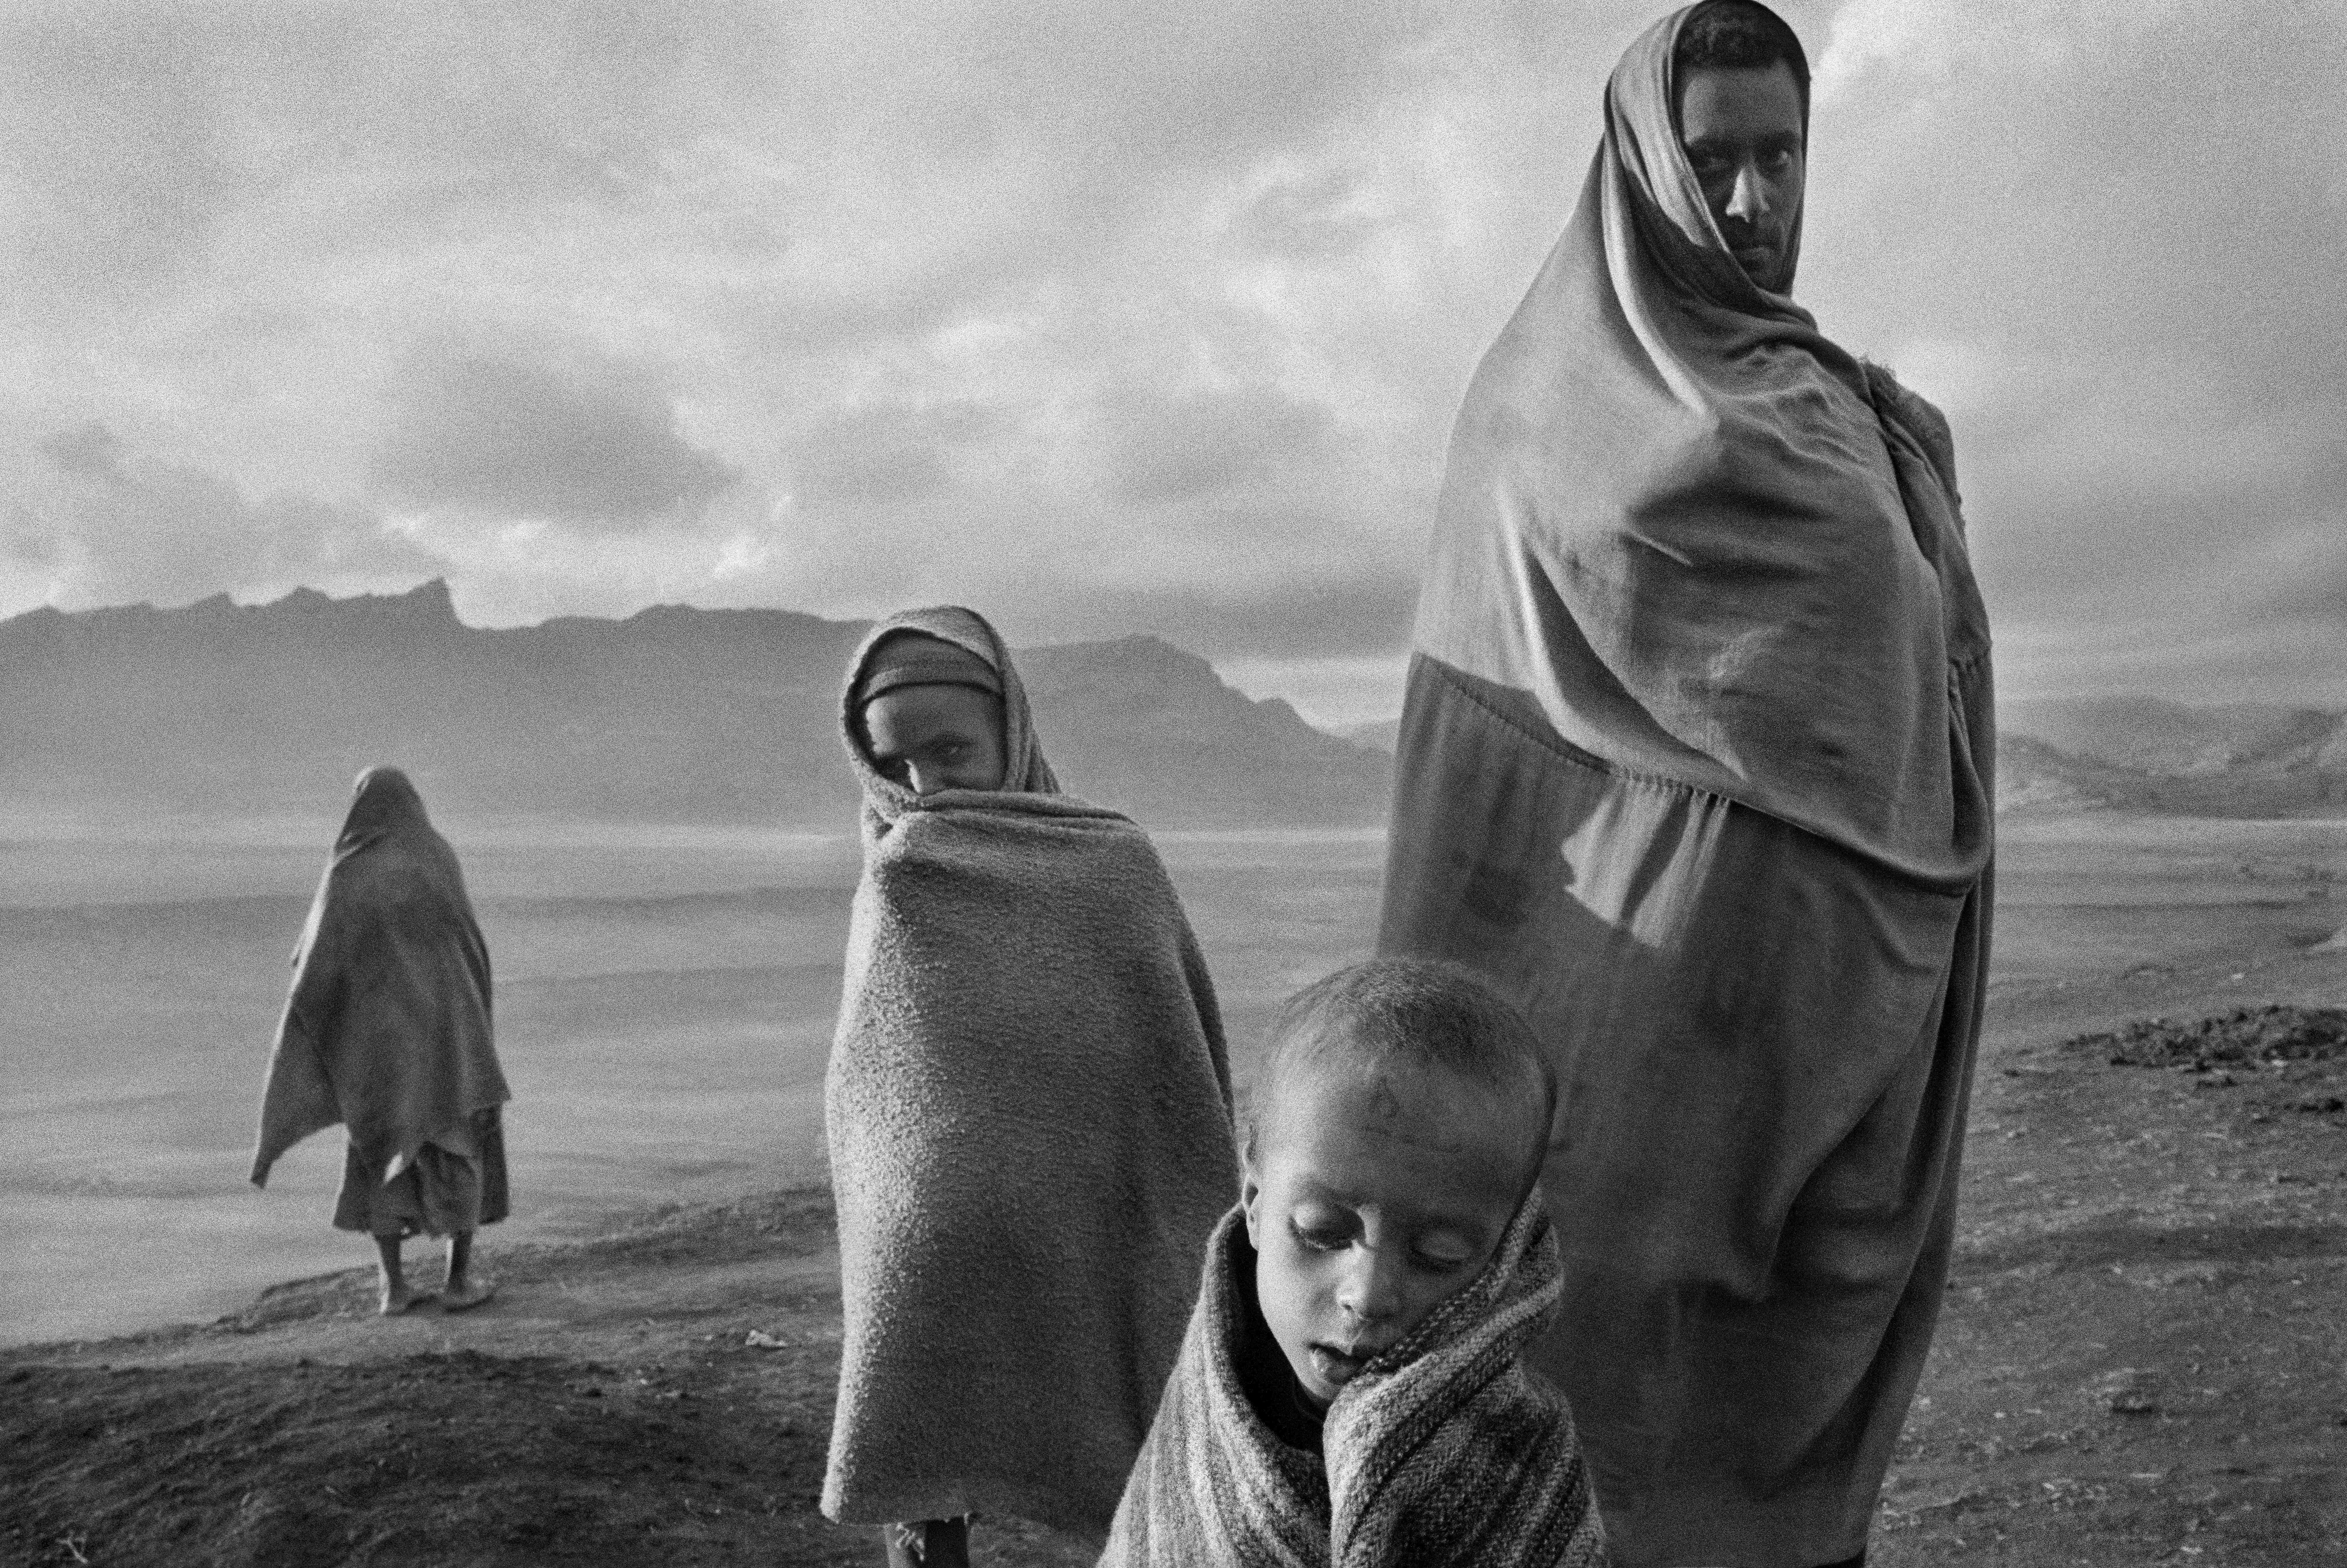 Беженцы в лагере, Эфиопия, 1984. Автор Себастьян Сальгадо